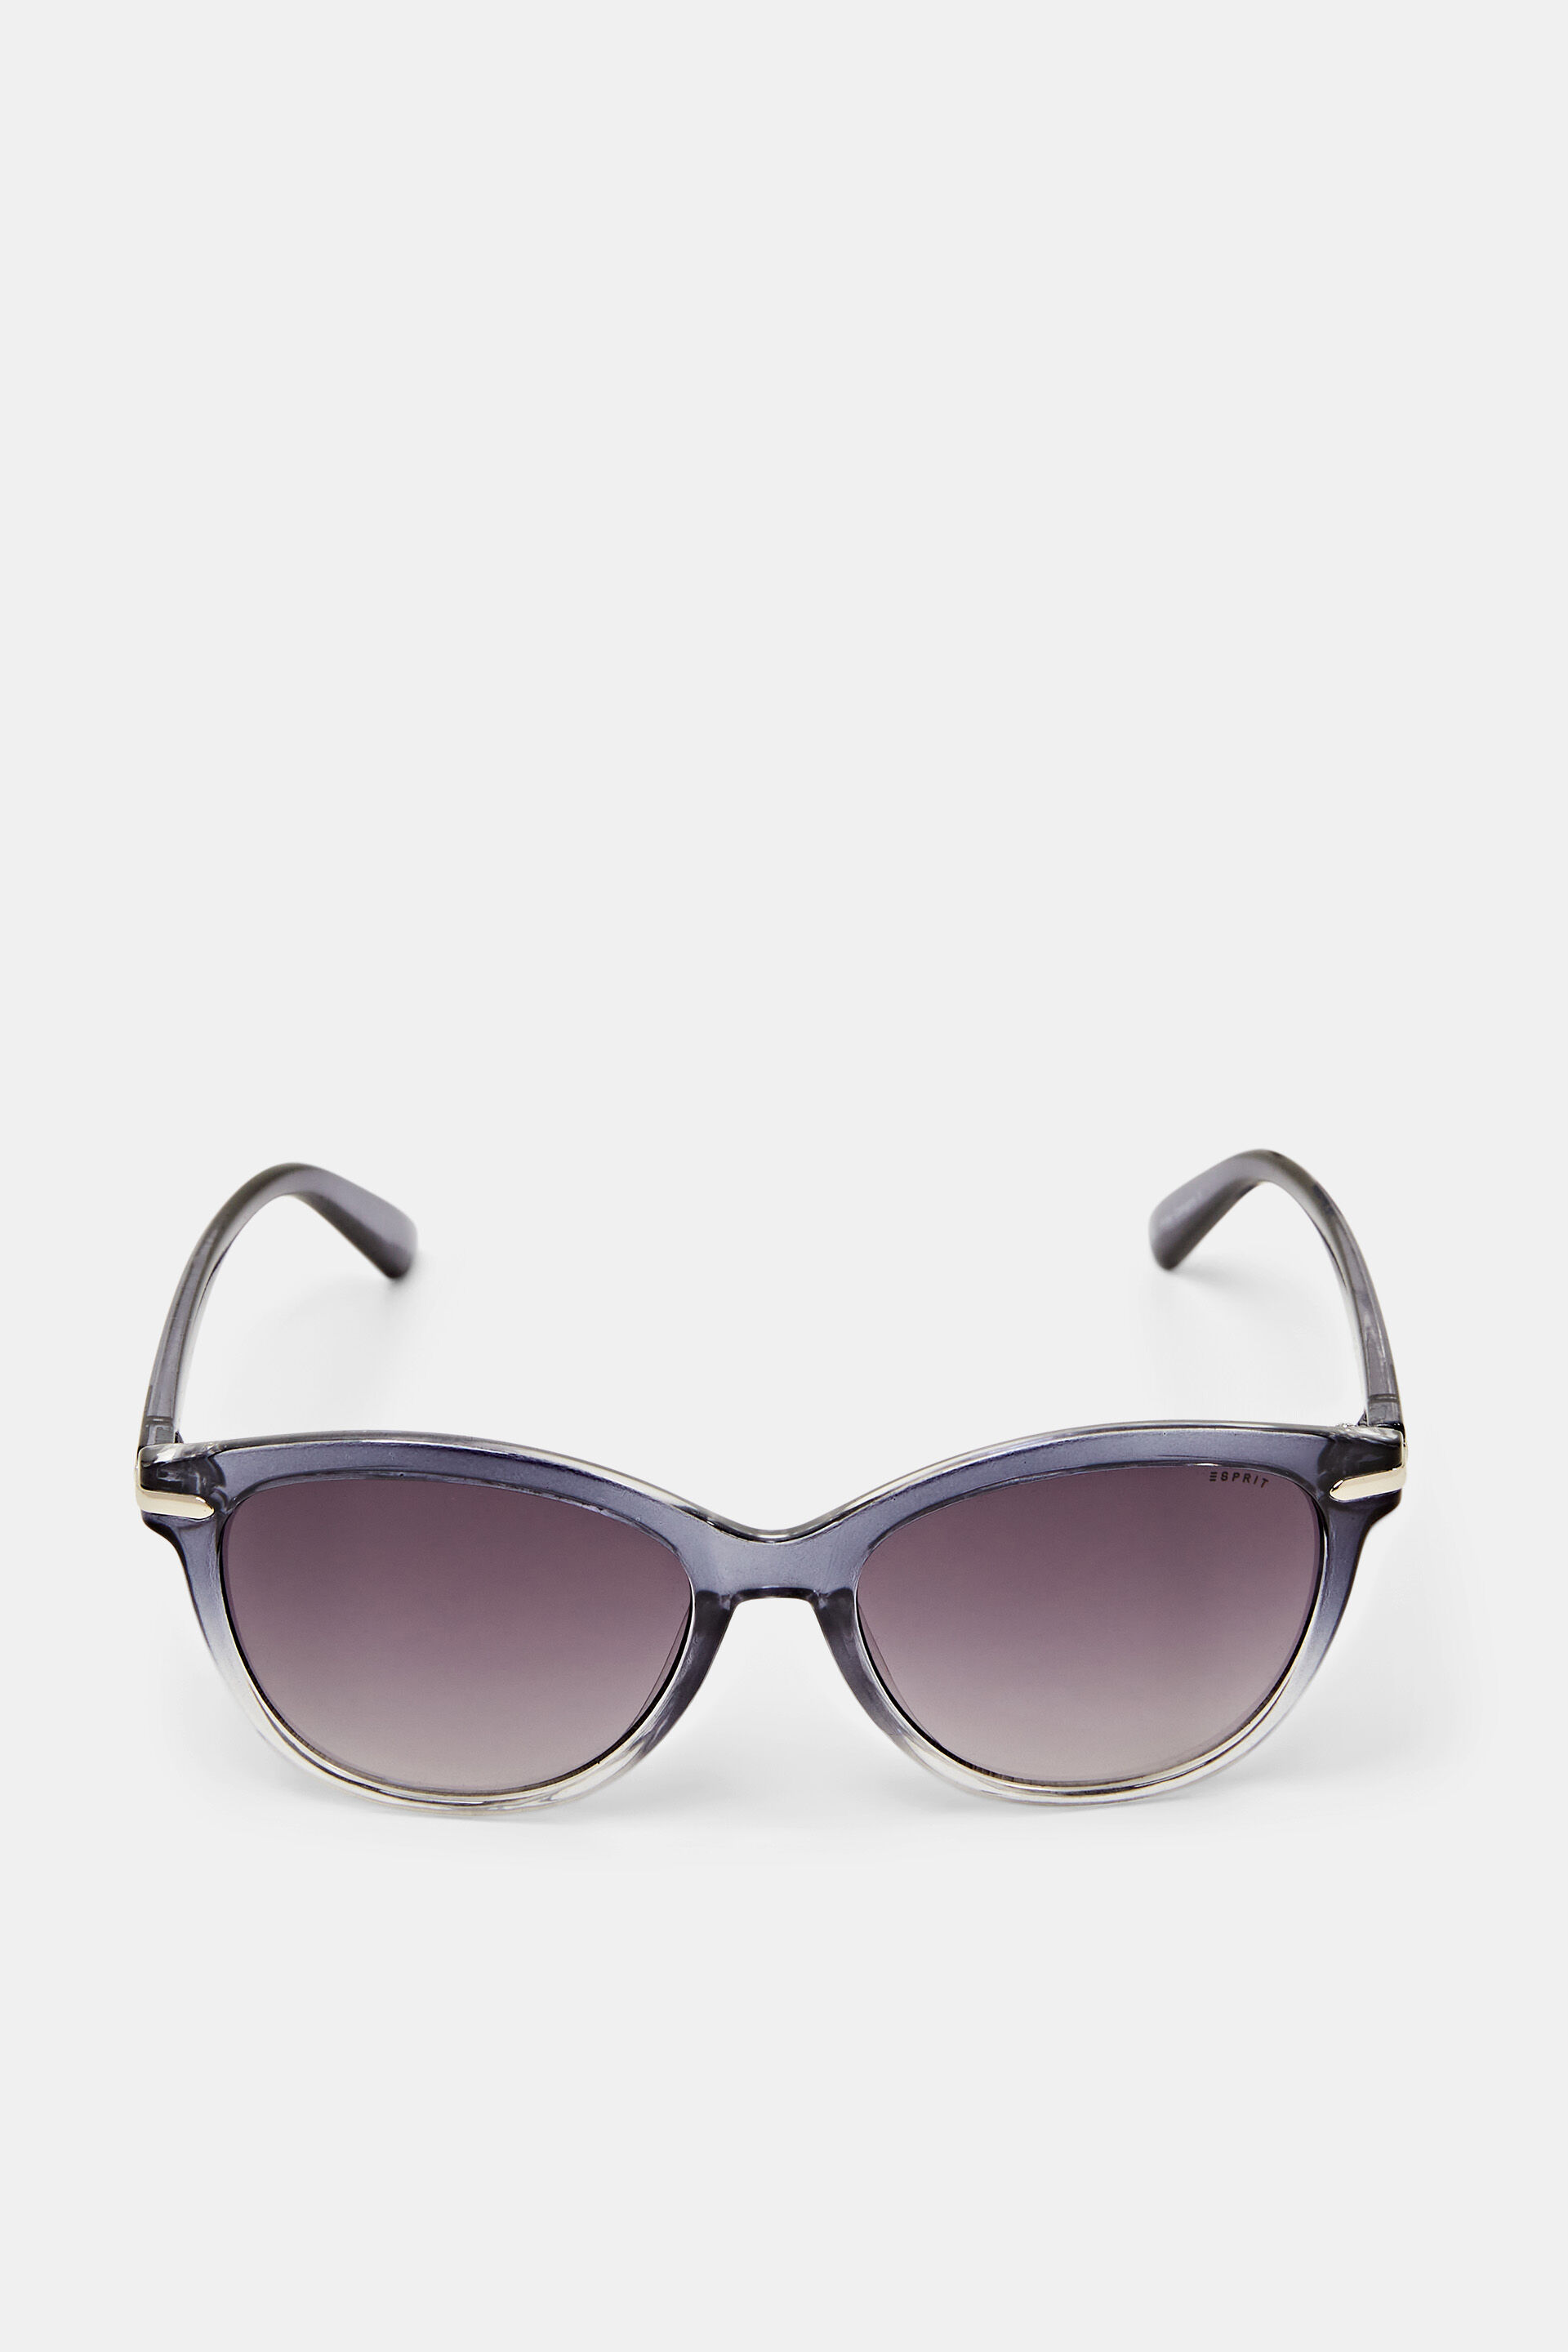 Esprit Sale Sonnenbrille mit abgestuften Farben